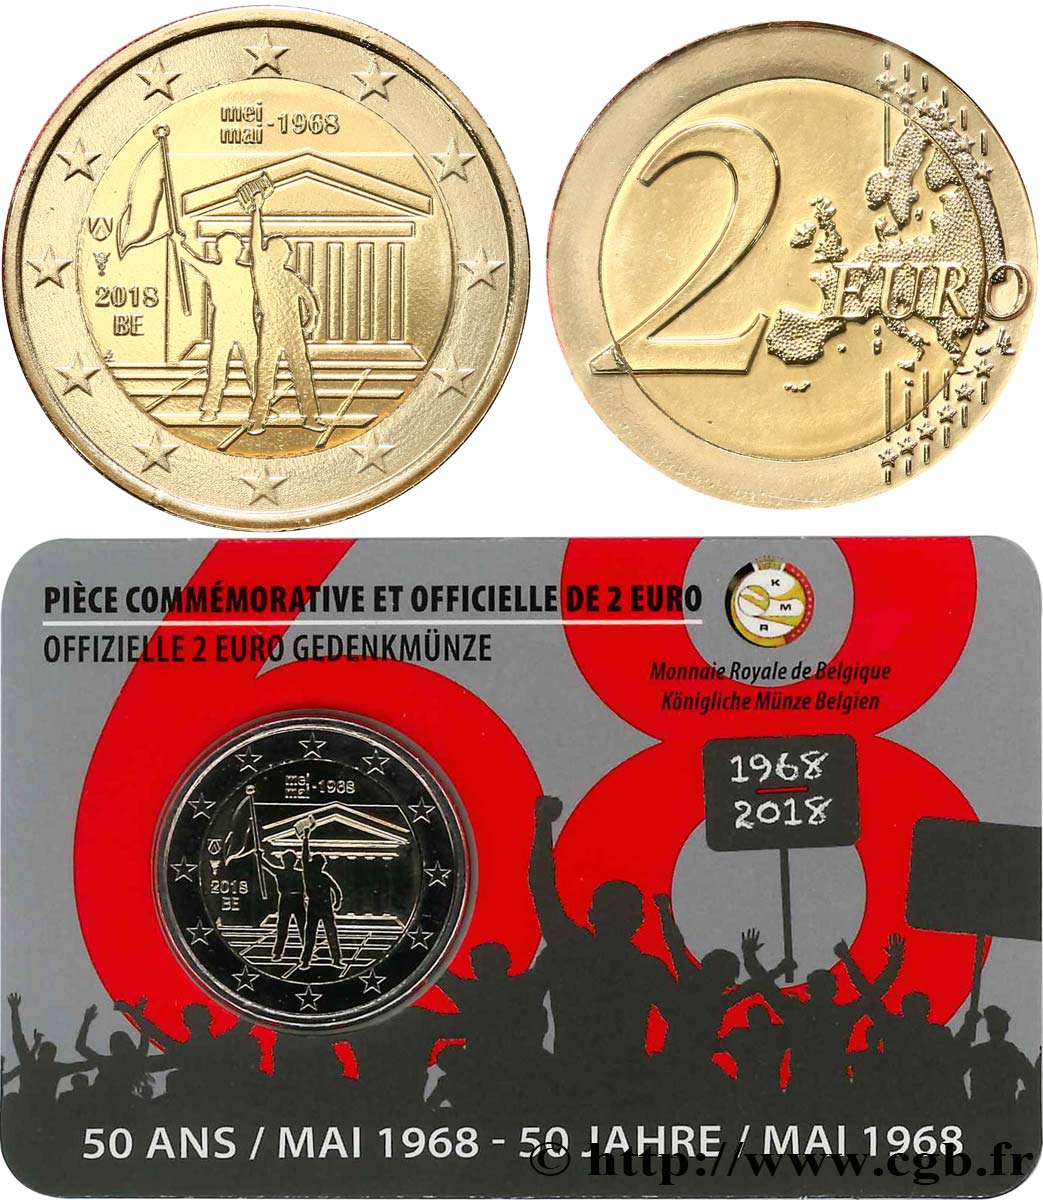 BELGIQUE Coin-card 2 Euro 50 ANS MAI 1968 - Version française 2018 FDC